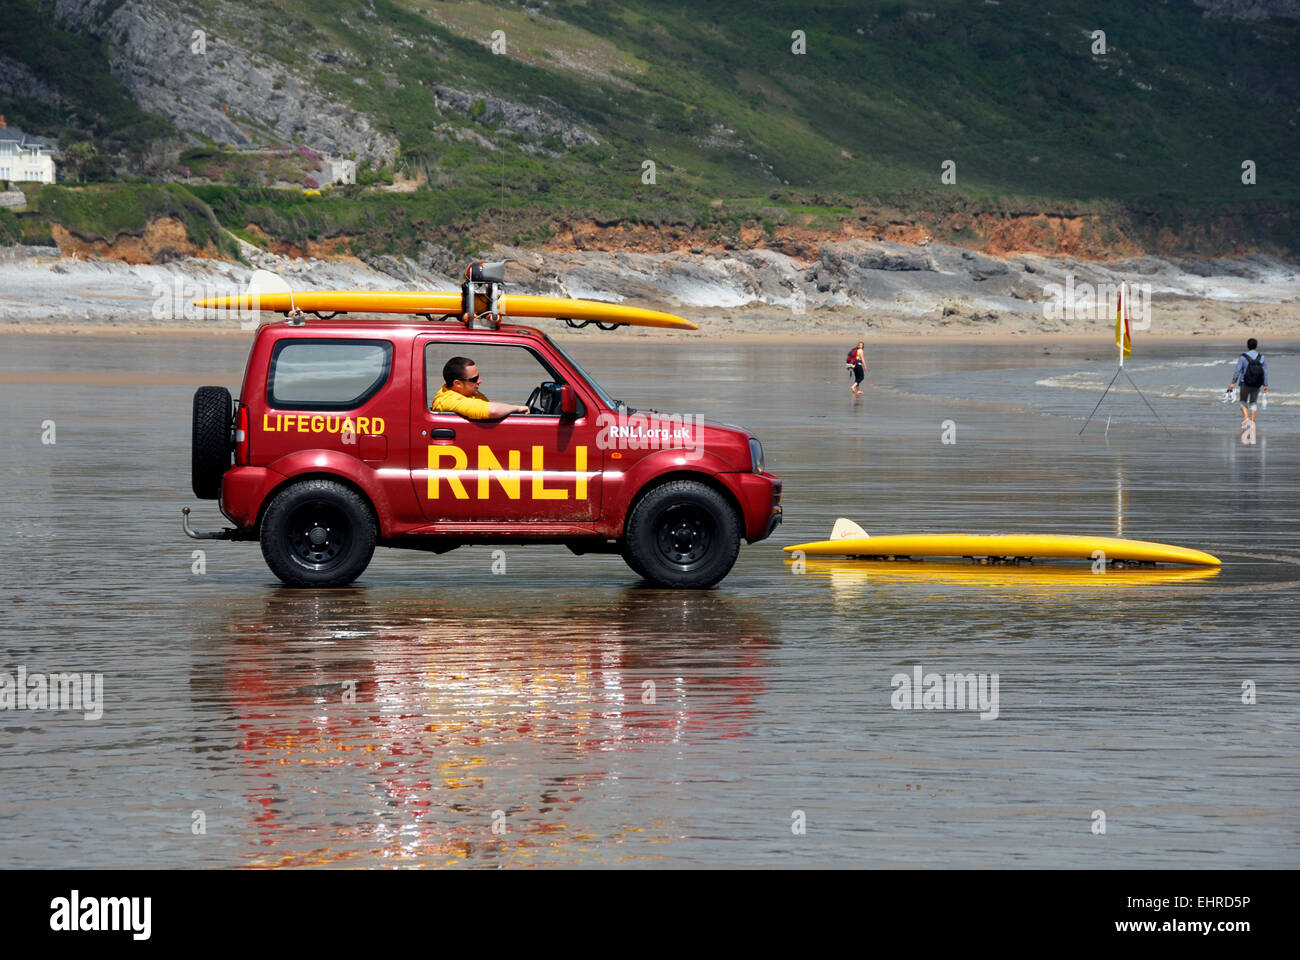 RNLI bagnino di veicolo sulla spiaggia Foto Stock